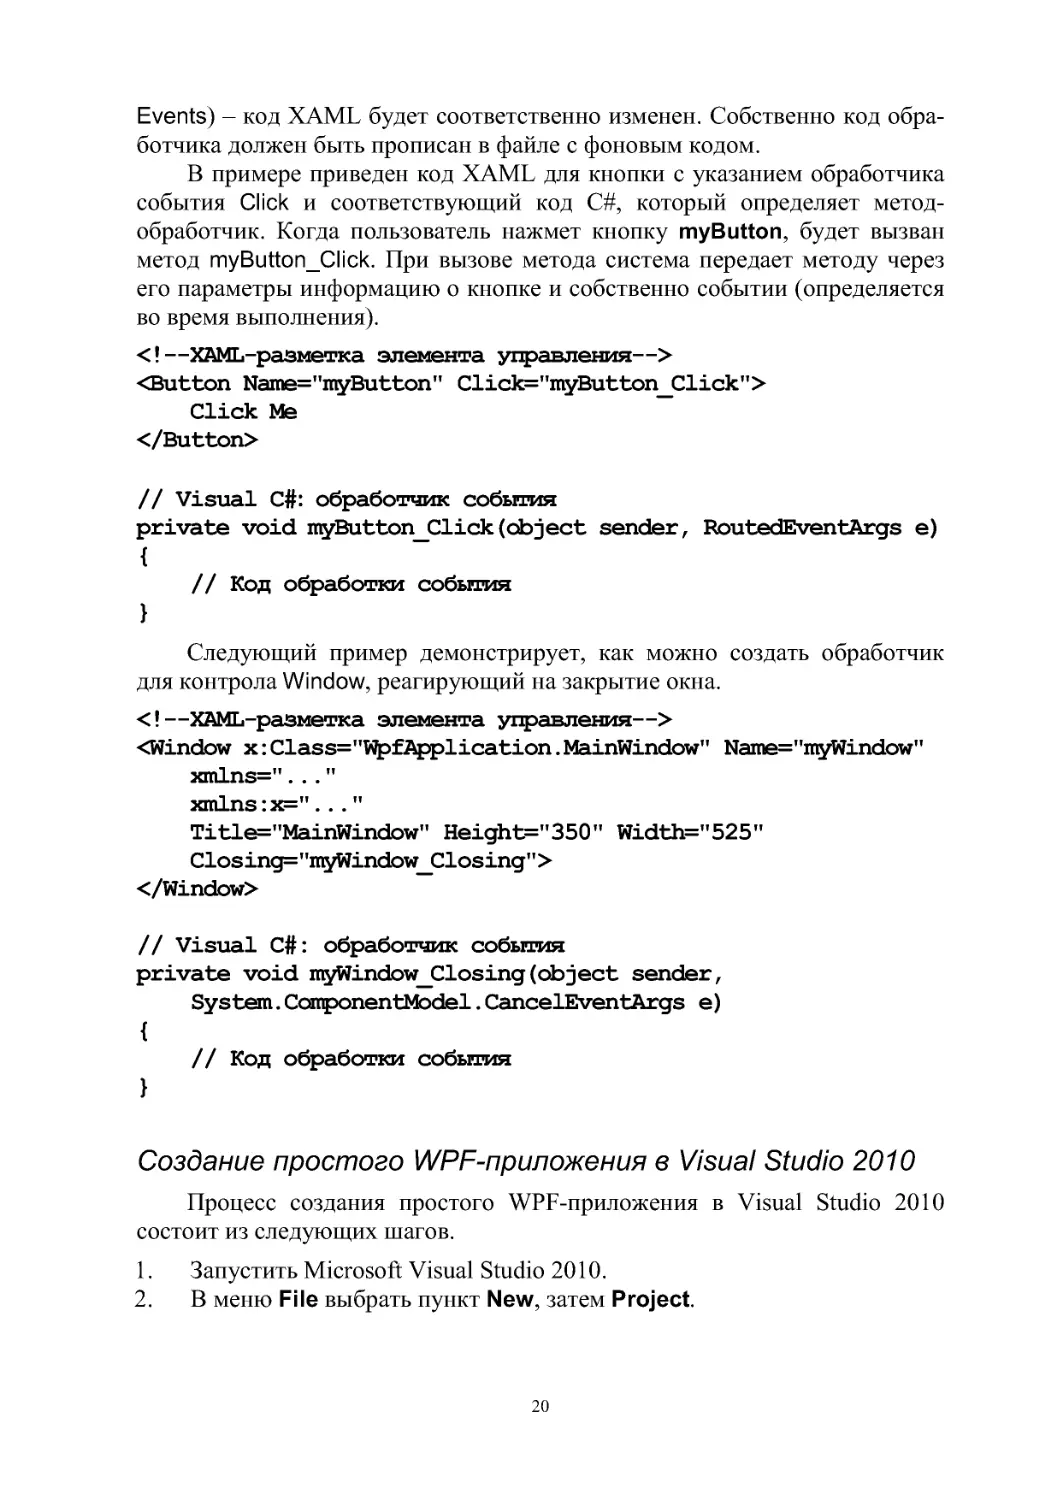 Создание простого WPF-приложения в Visual Studio 2010